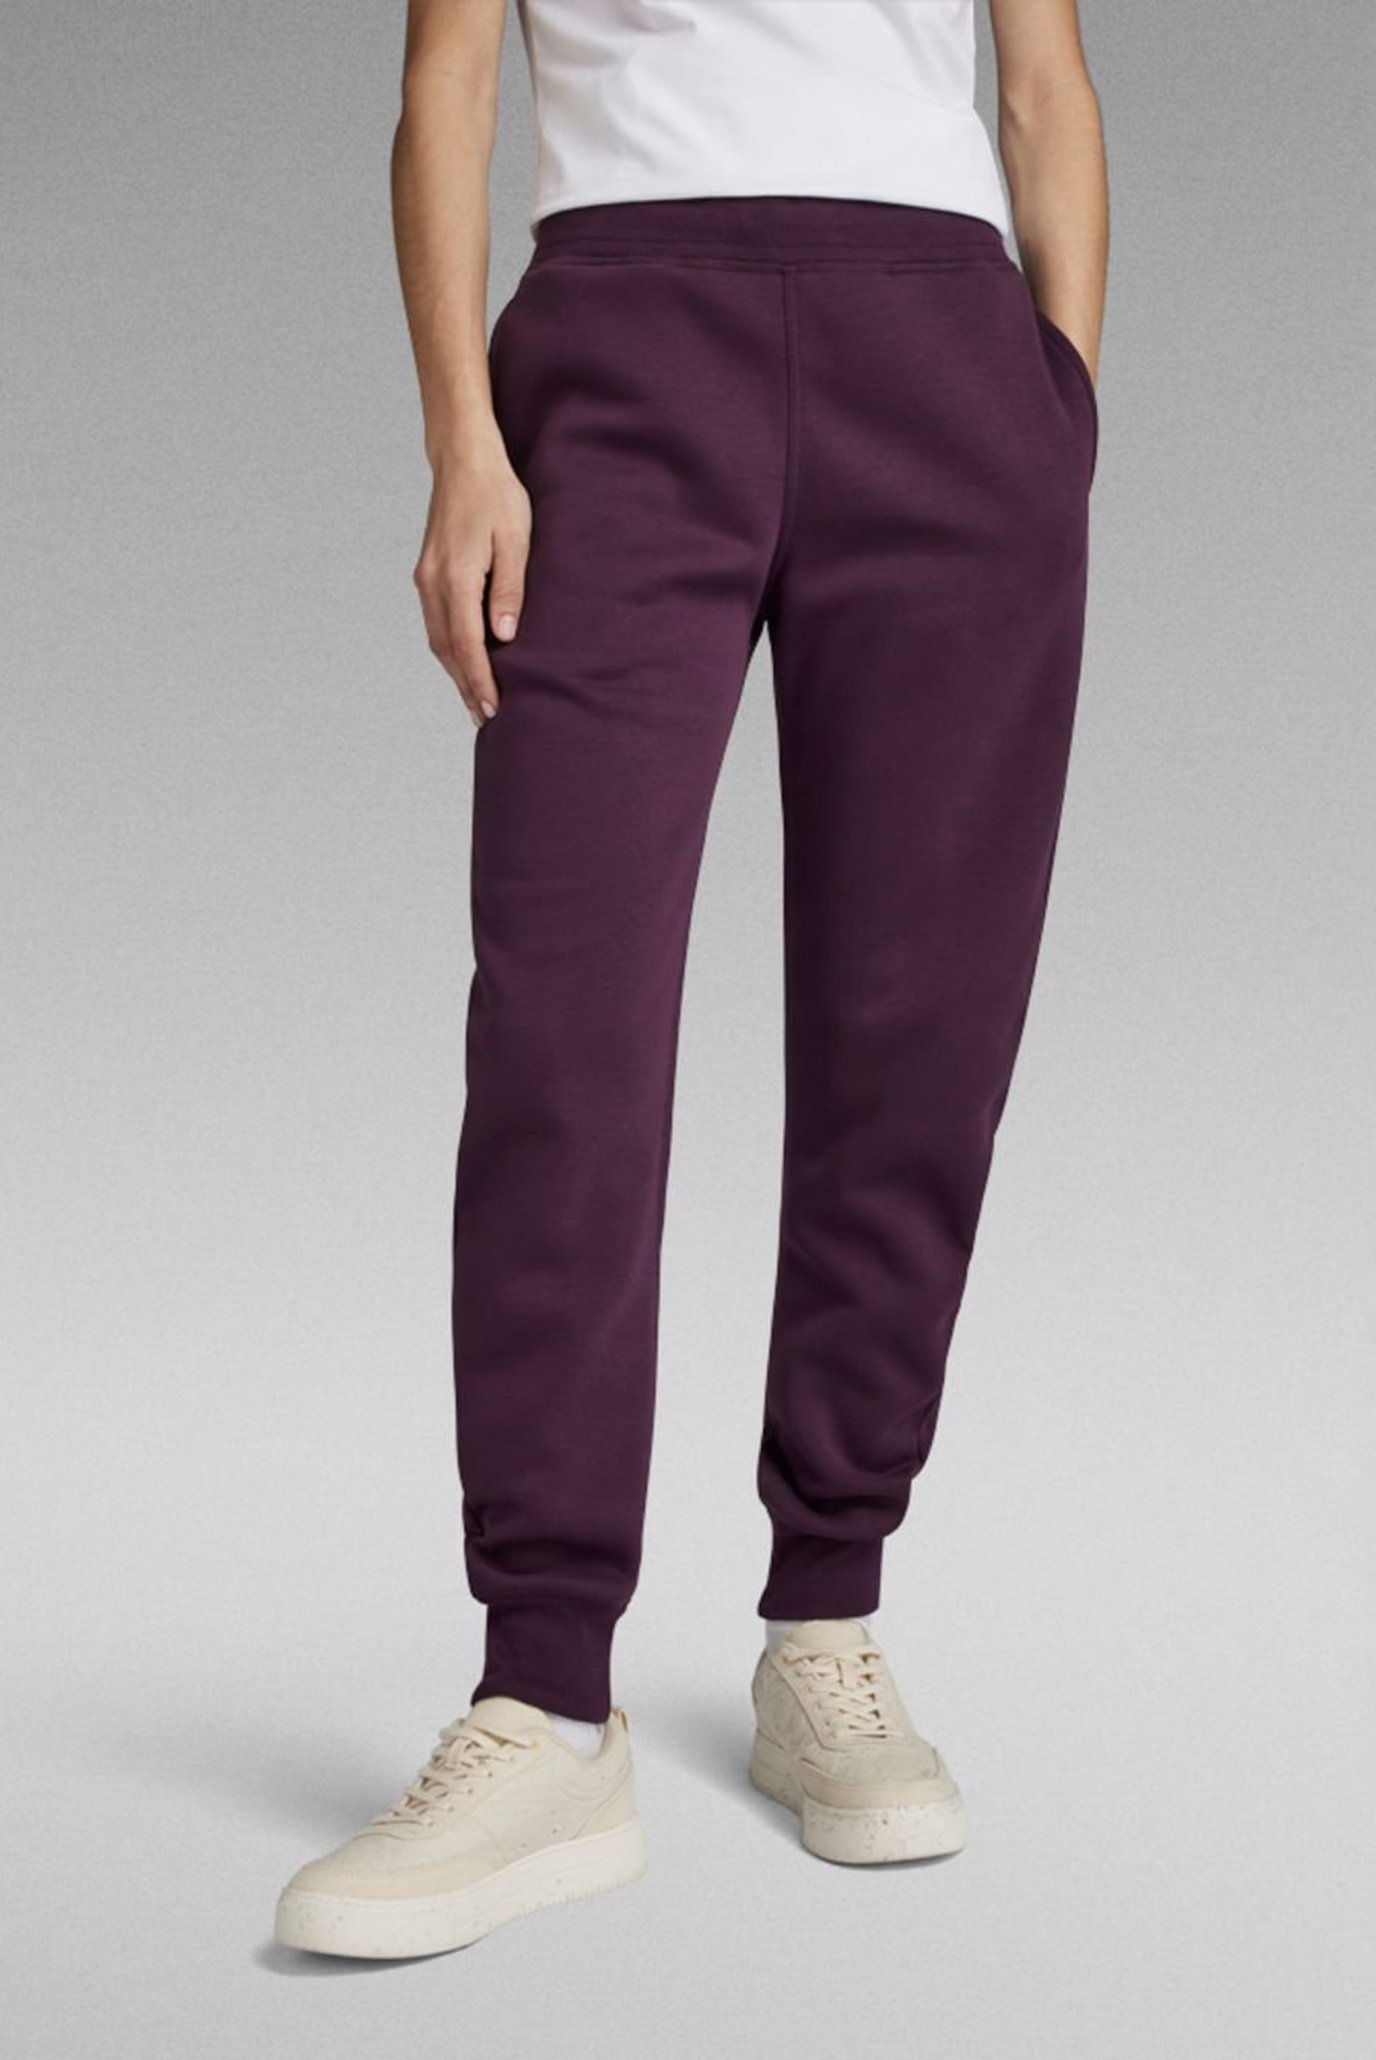 Жіночі фіолетові спортивні штани Premium core 2.0 1